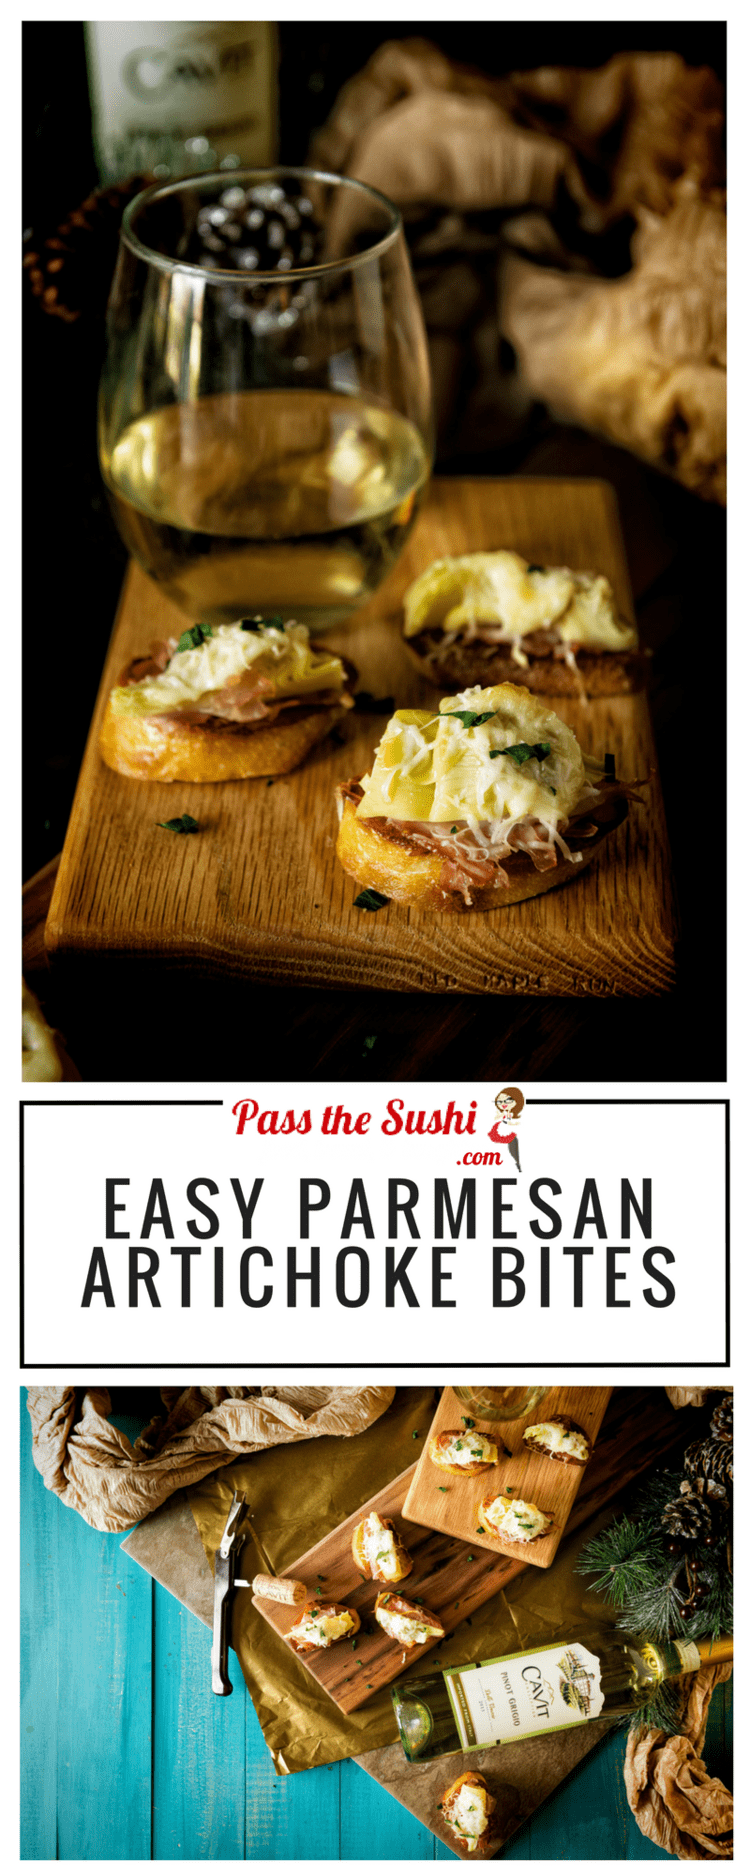 Easy Parmesan Artichoke Bites